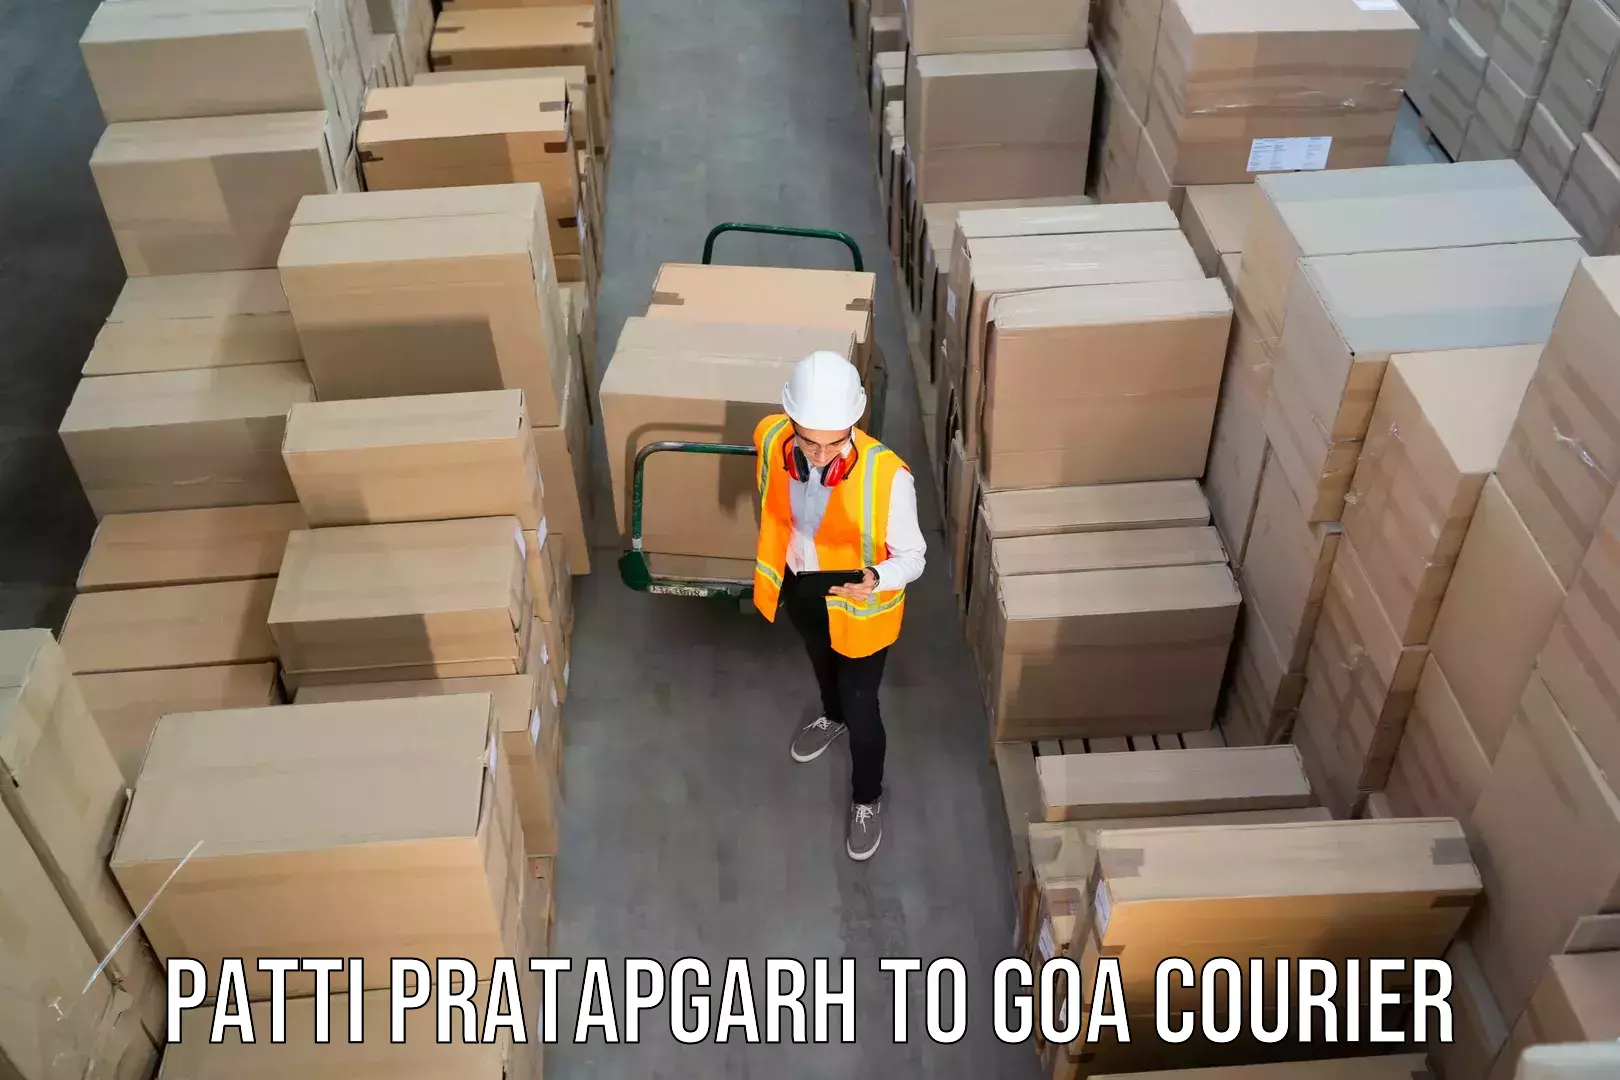 Remote area delivery Patti Pratapgarh to Panaji